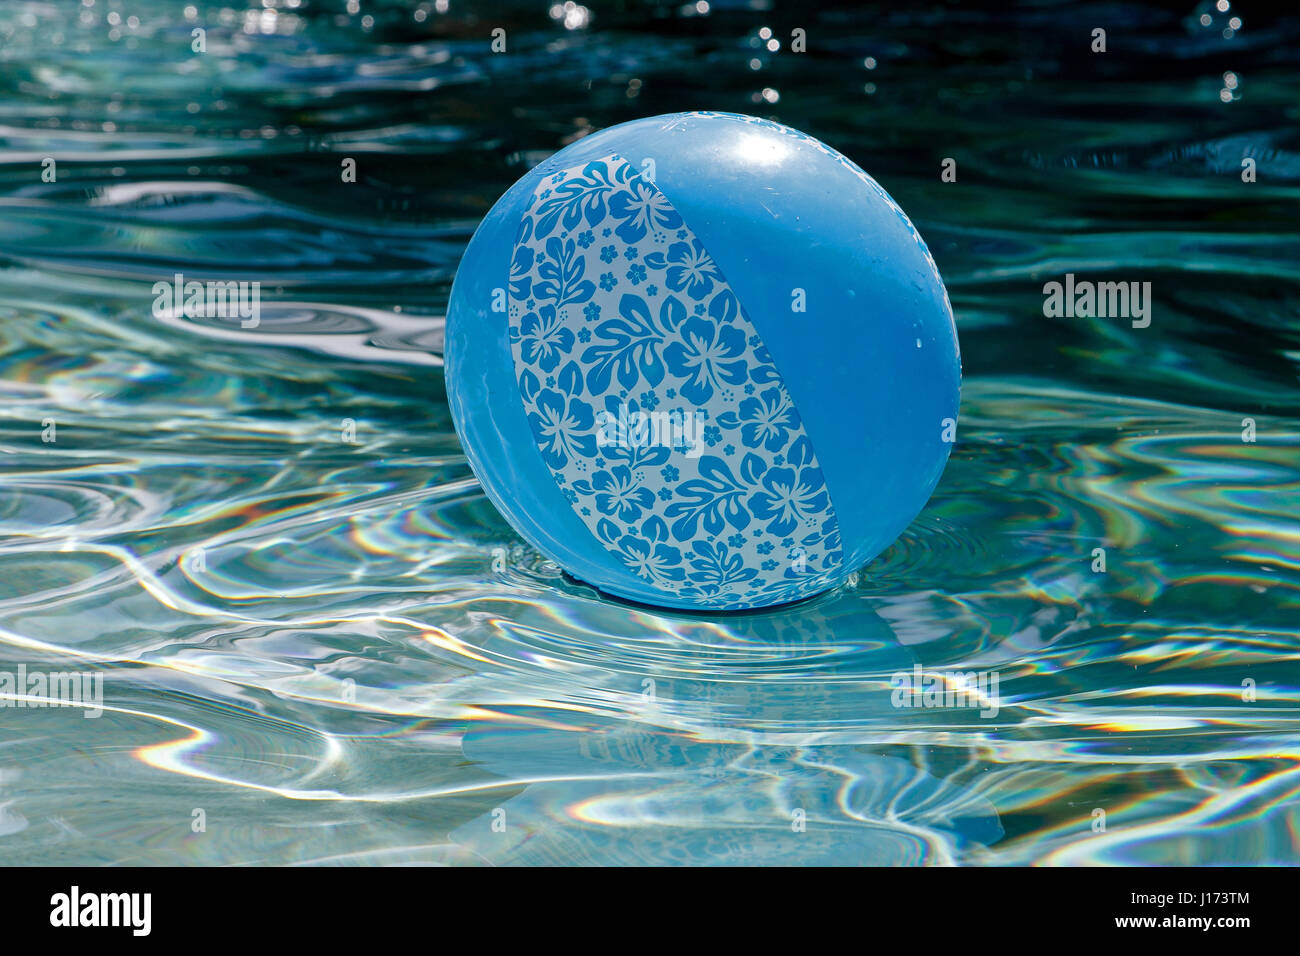 Blue ball gonflable est flottant dans une piscine. Banque D'Images